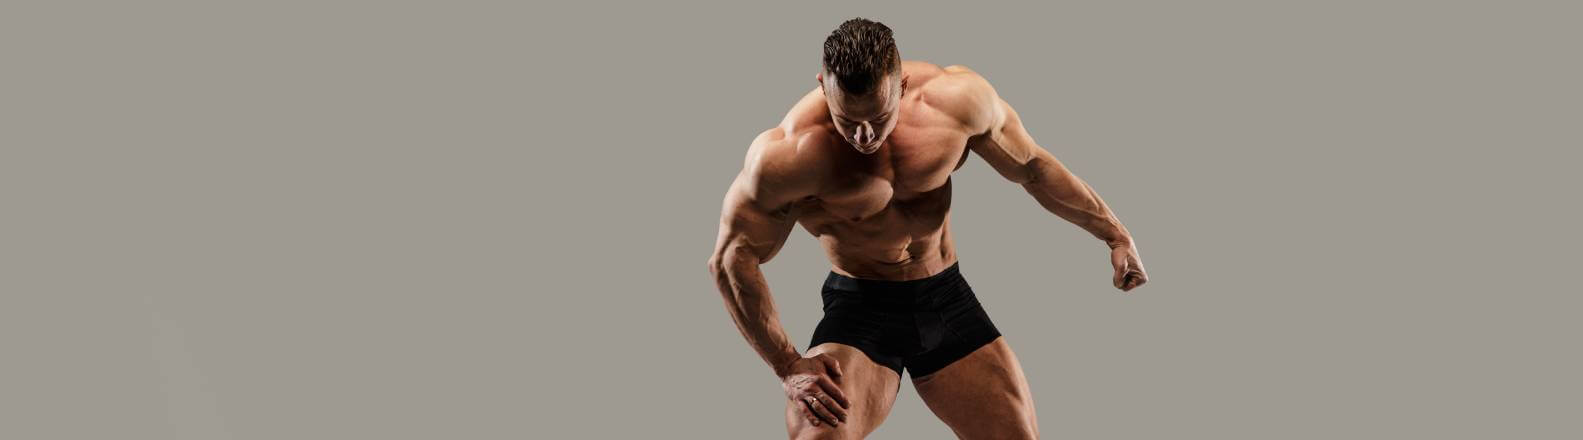 Descubra o que é bodybuilding e como se tornar um bodybuilder!